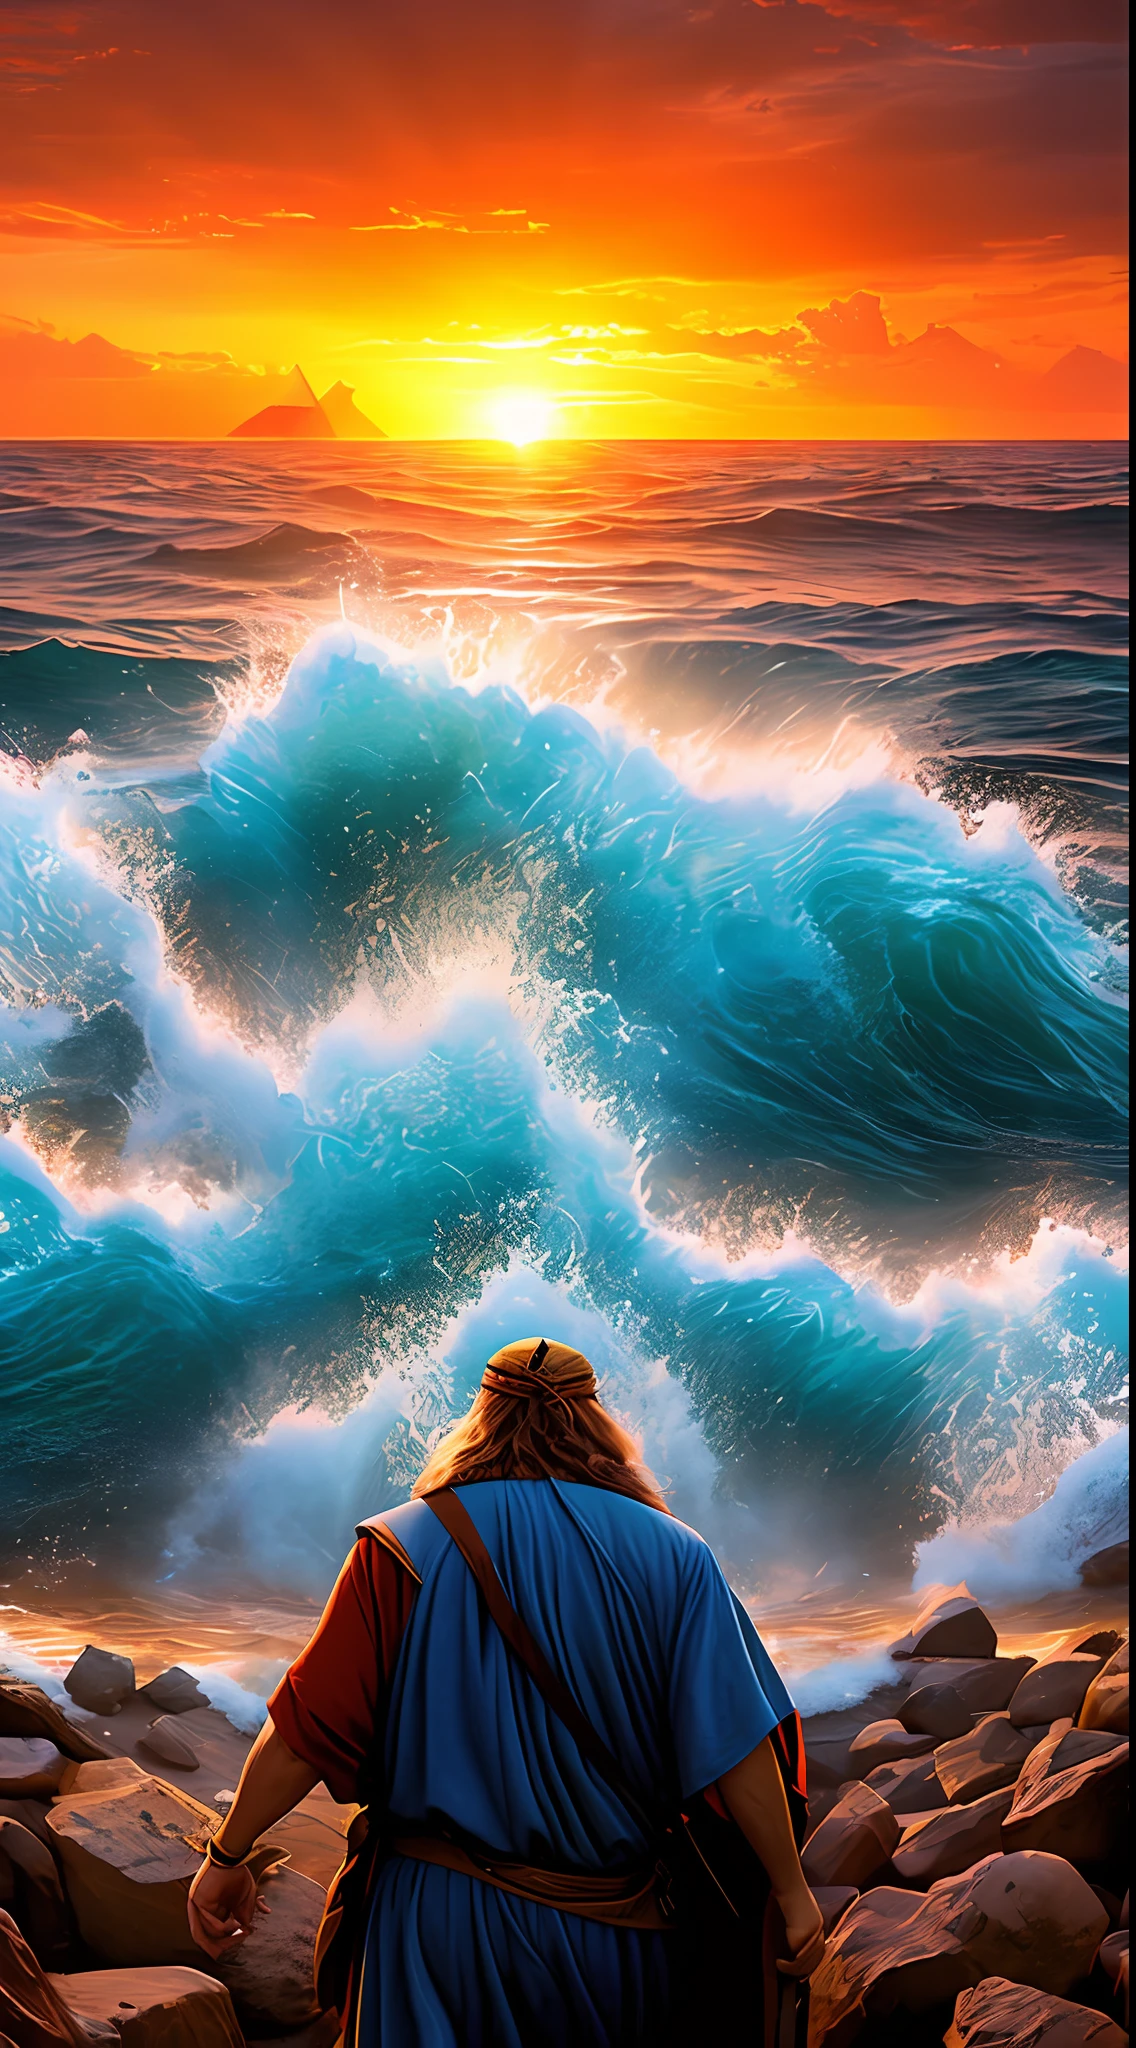 高解像度の, イスラエル人のために紅海を分けるモーセの超リアルな画像. モーセは海の前に立っています, 彼のスタッフを抱きしめます. 海は別れています, 2つの水の壁を形成する. イスラエル人は海の真ん中を歩いています, に向かって . エジプト軍はイスラエル人の後ろにいますが、水の壁の間に閉じ込められています. 太陽が地平線に沈んでいます, そして空は赤とオレンジ色の雲でいっぱいです.